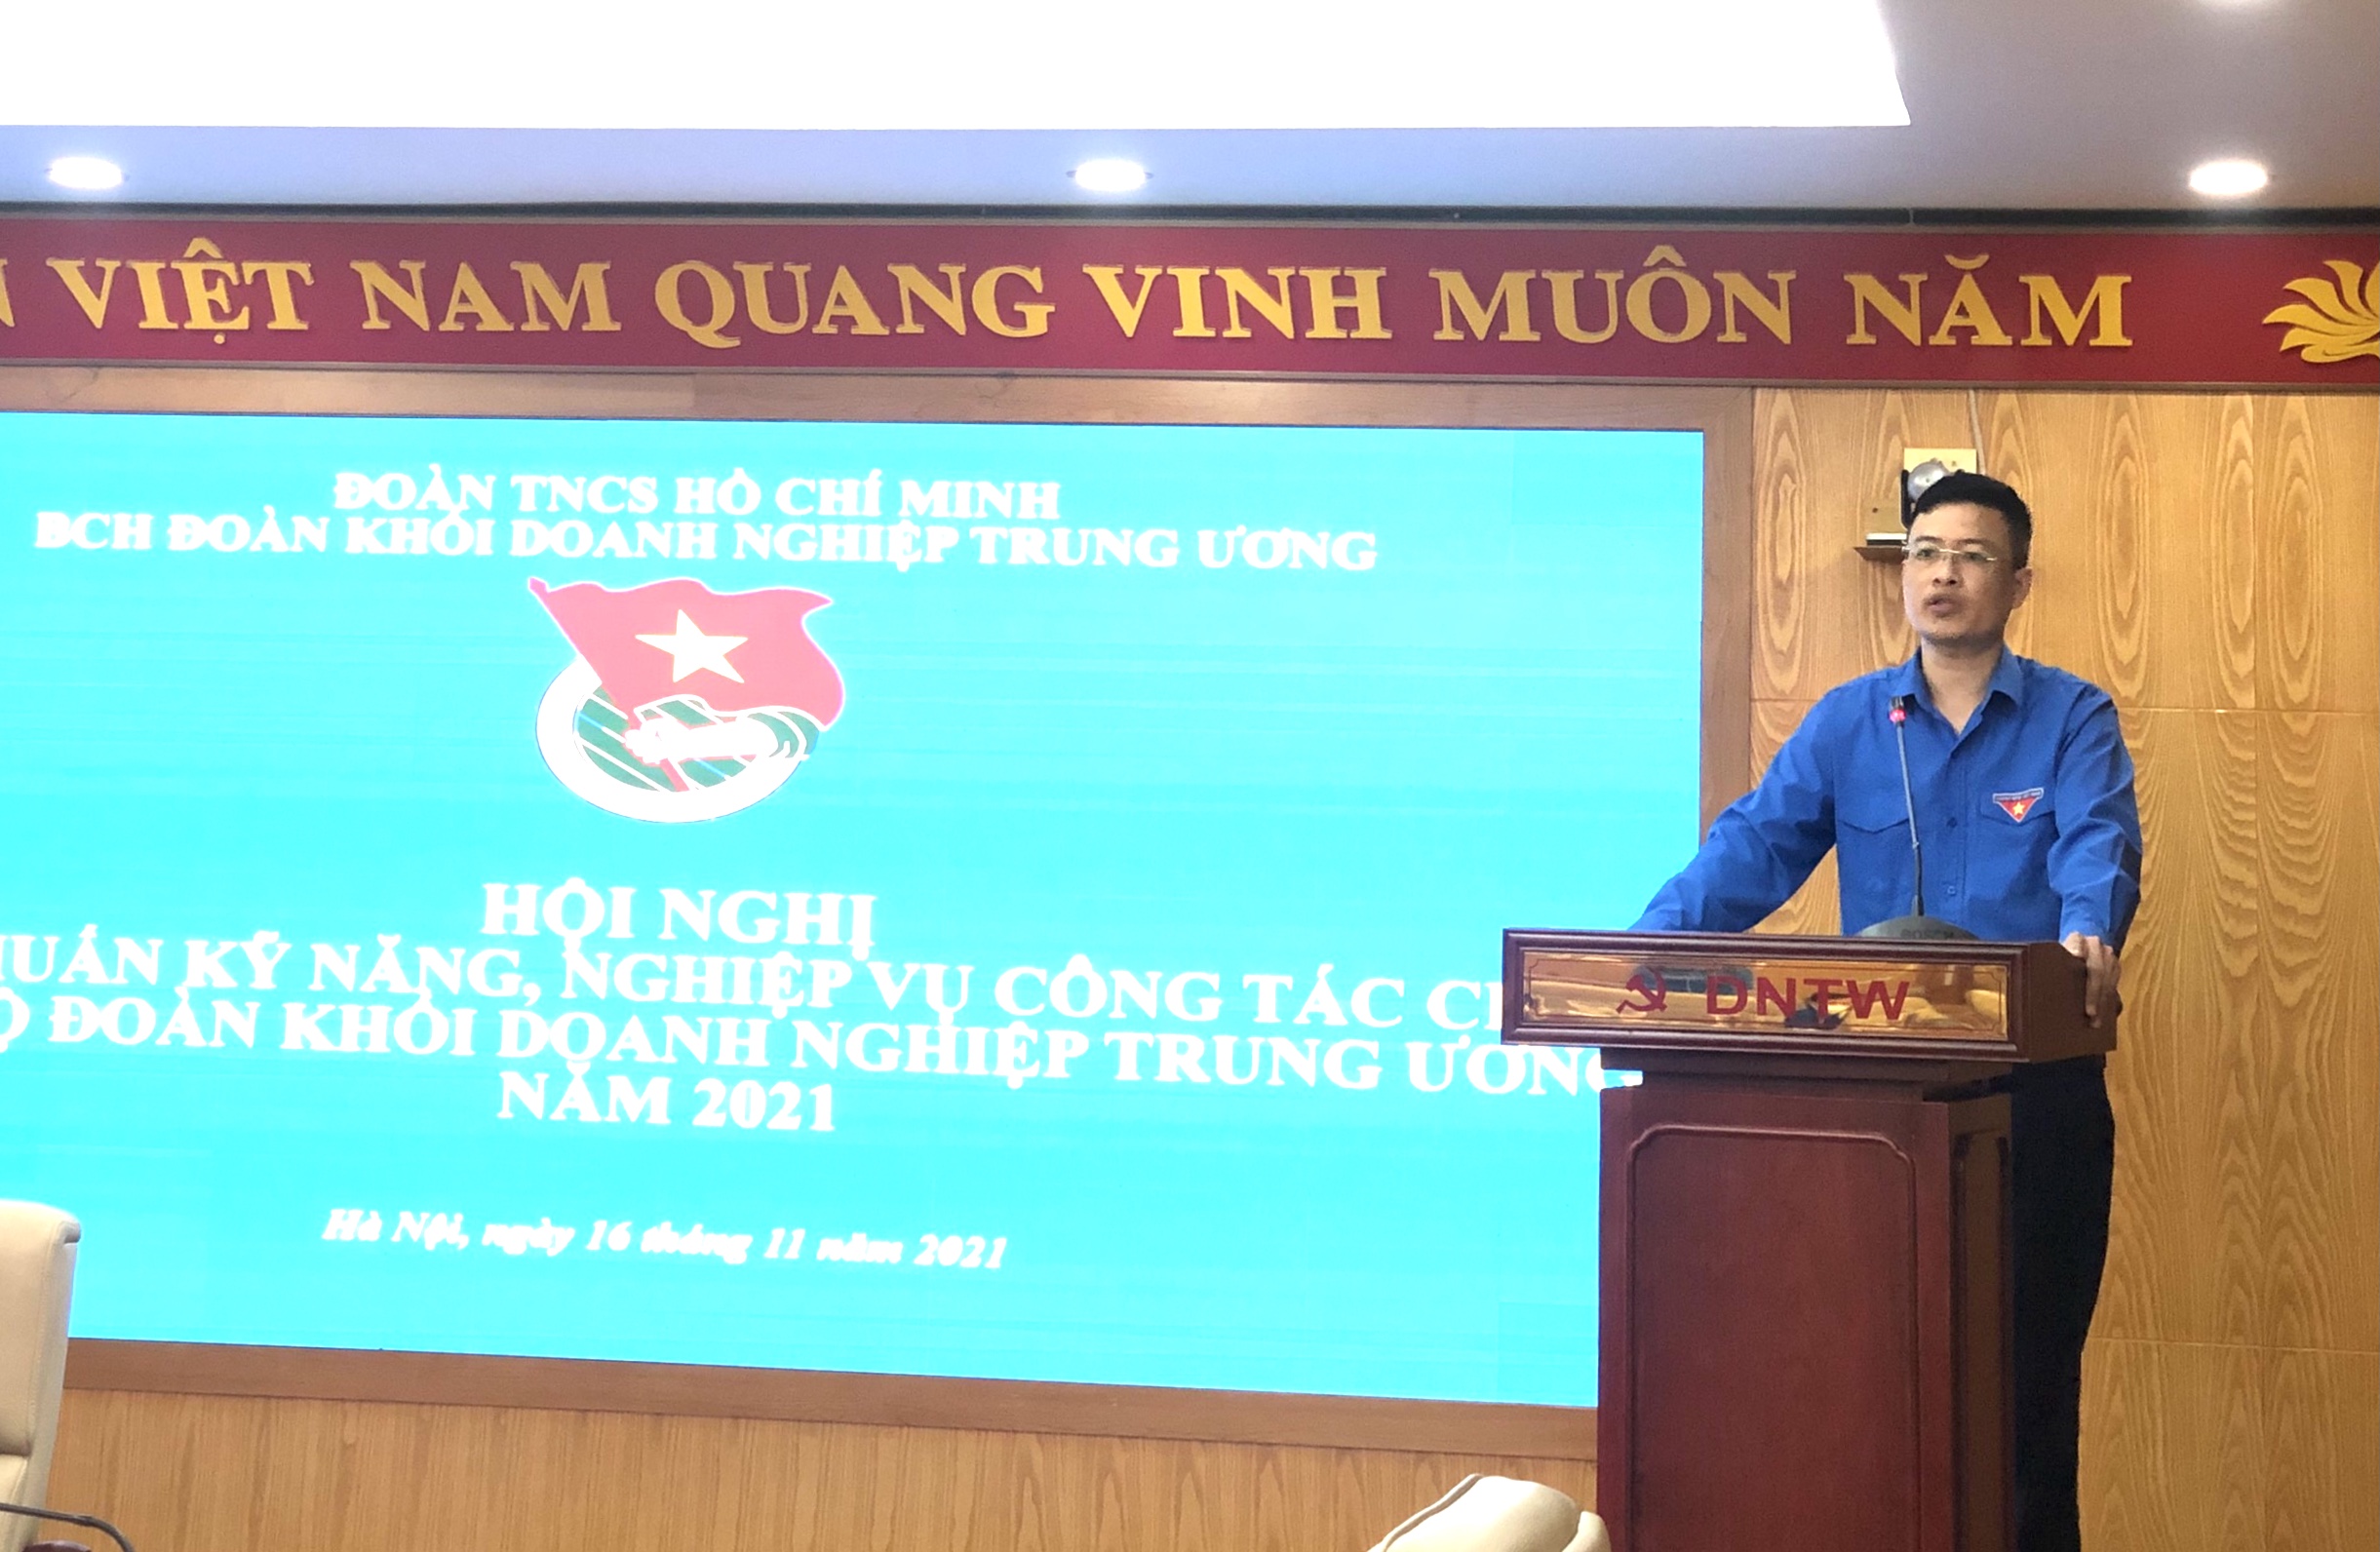 Đồng chí Nguyễn Văn Quyết, Phó Bí thư Thường trực Đoàn Khối DNTW phát biểu tại Hội nghị Tập huấn.